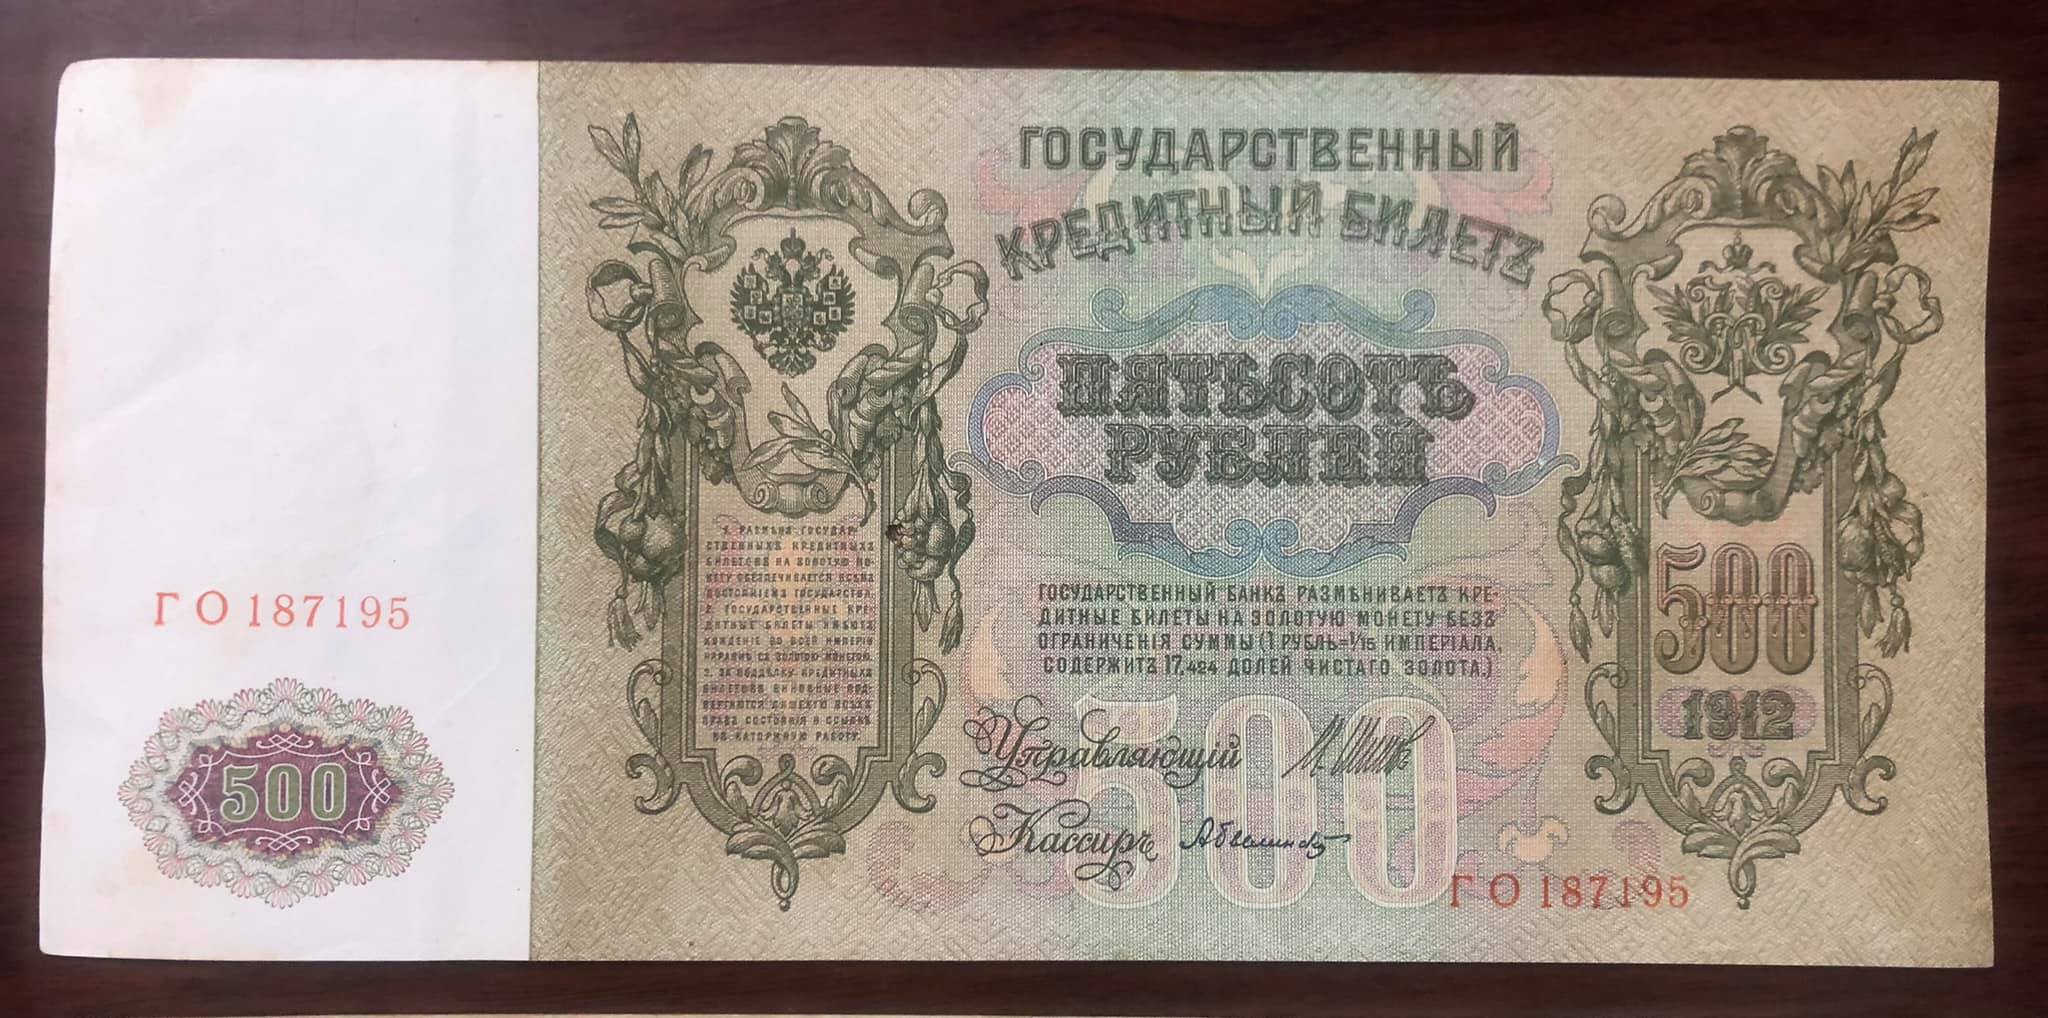 Tờ 500 Rúp Nga 1912, tờ tiền có kích thước lớn nhất thế giới, hơn 100 năm tuổi